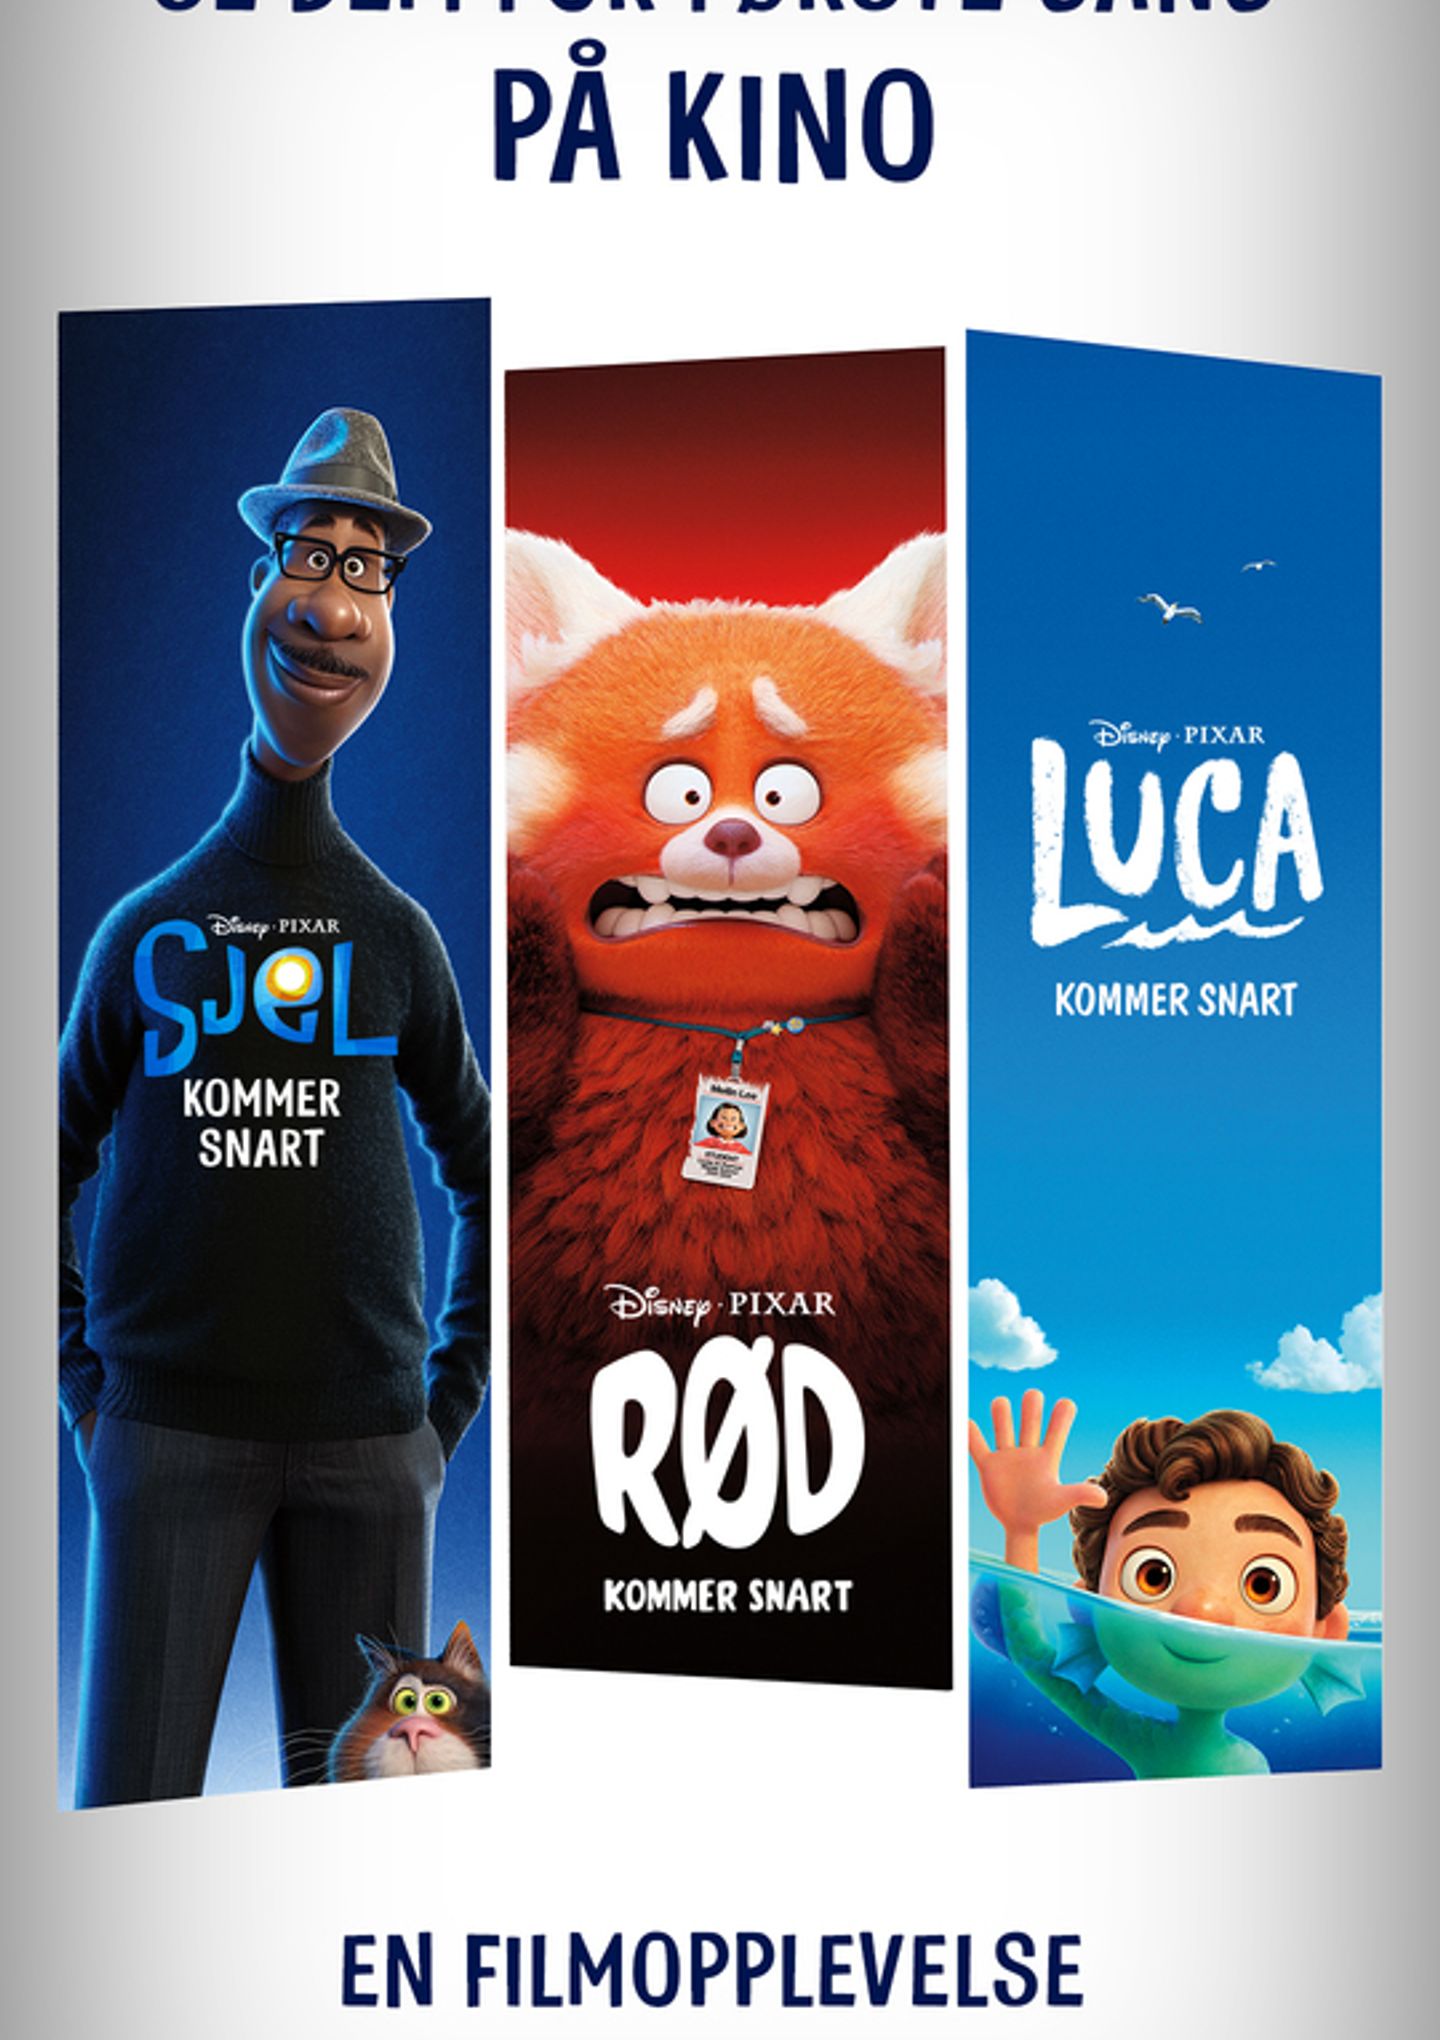 Plakat for 'Luca'